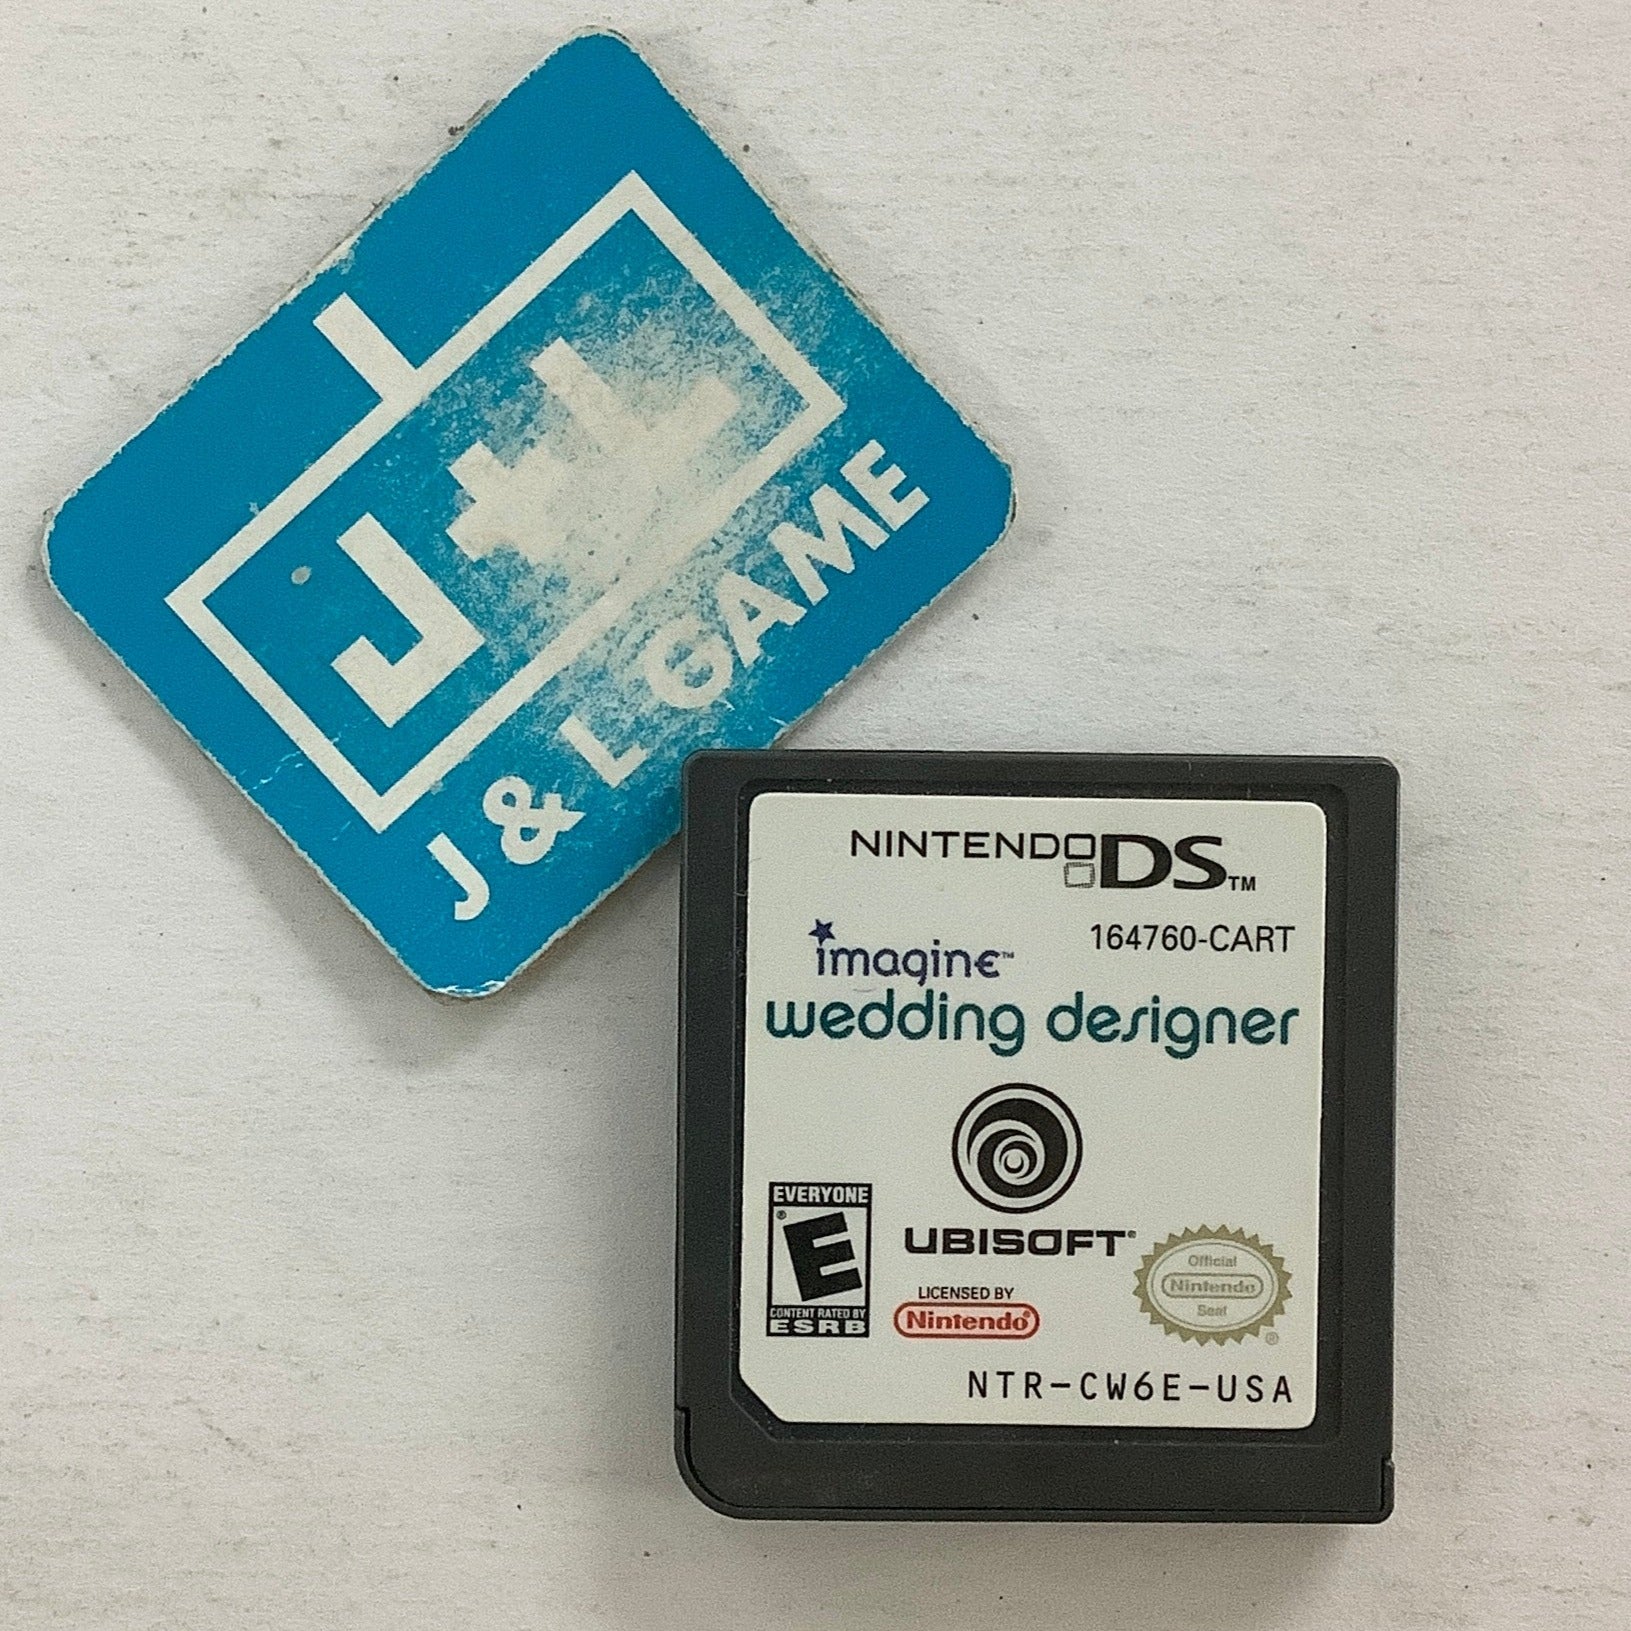 Imagine: Wedding Designer - (NDS) Nintendo DS [Pre-Owned] Video Games Ubisoft   